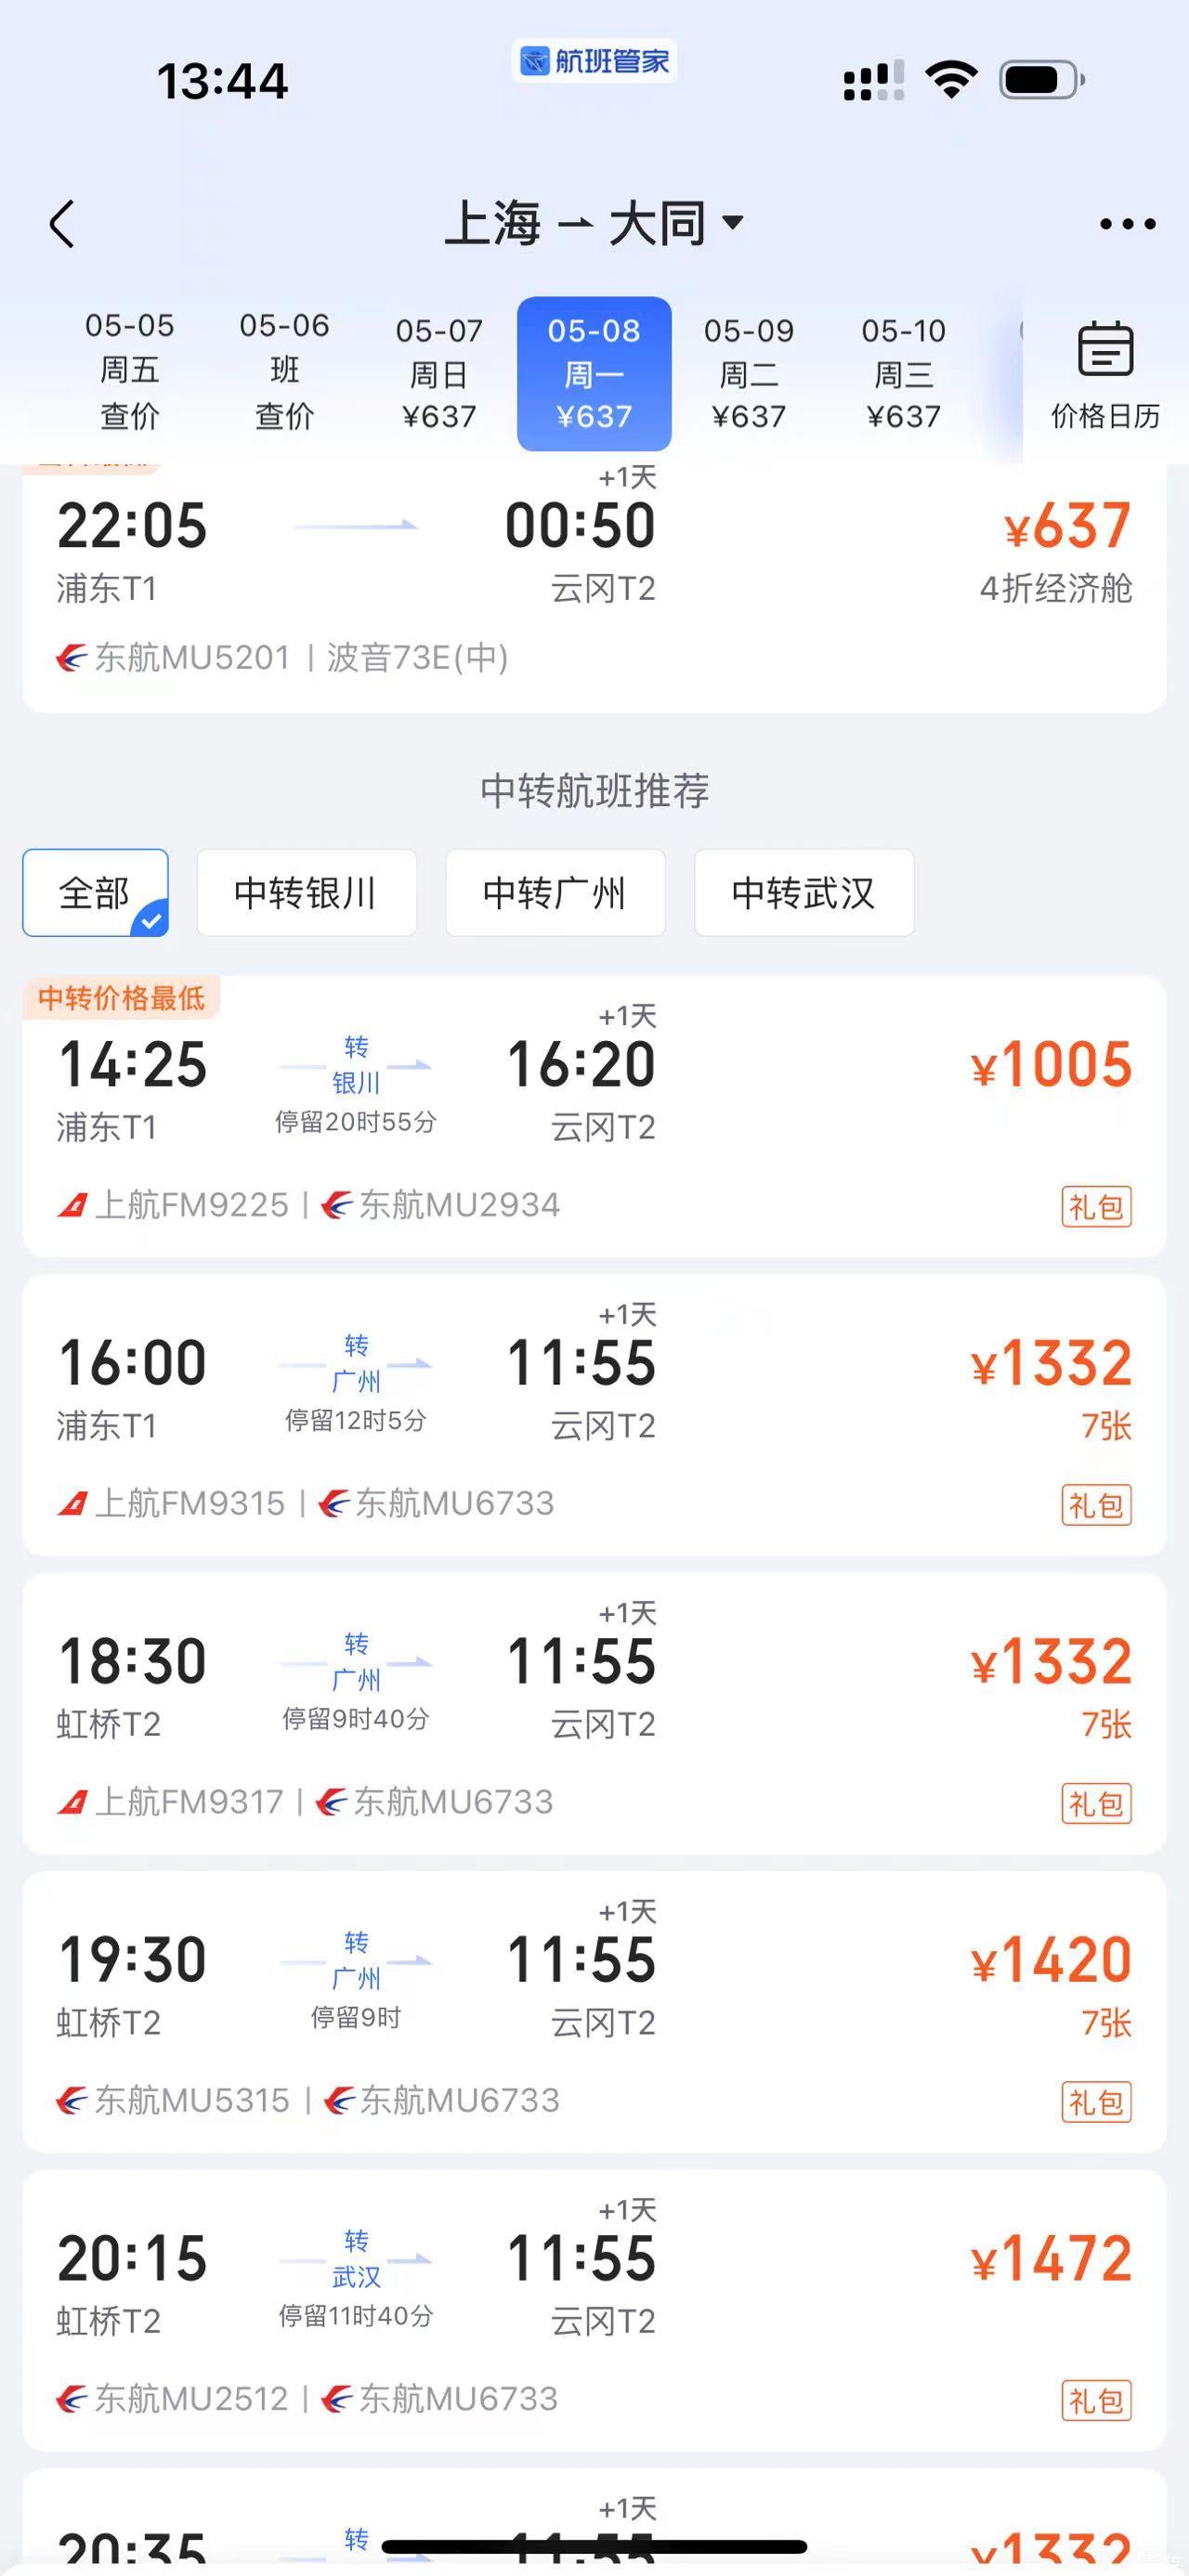 为什么到上海--大同的航班这么少？？